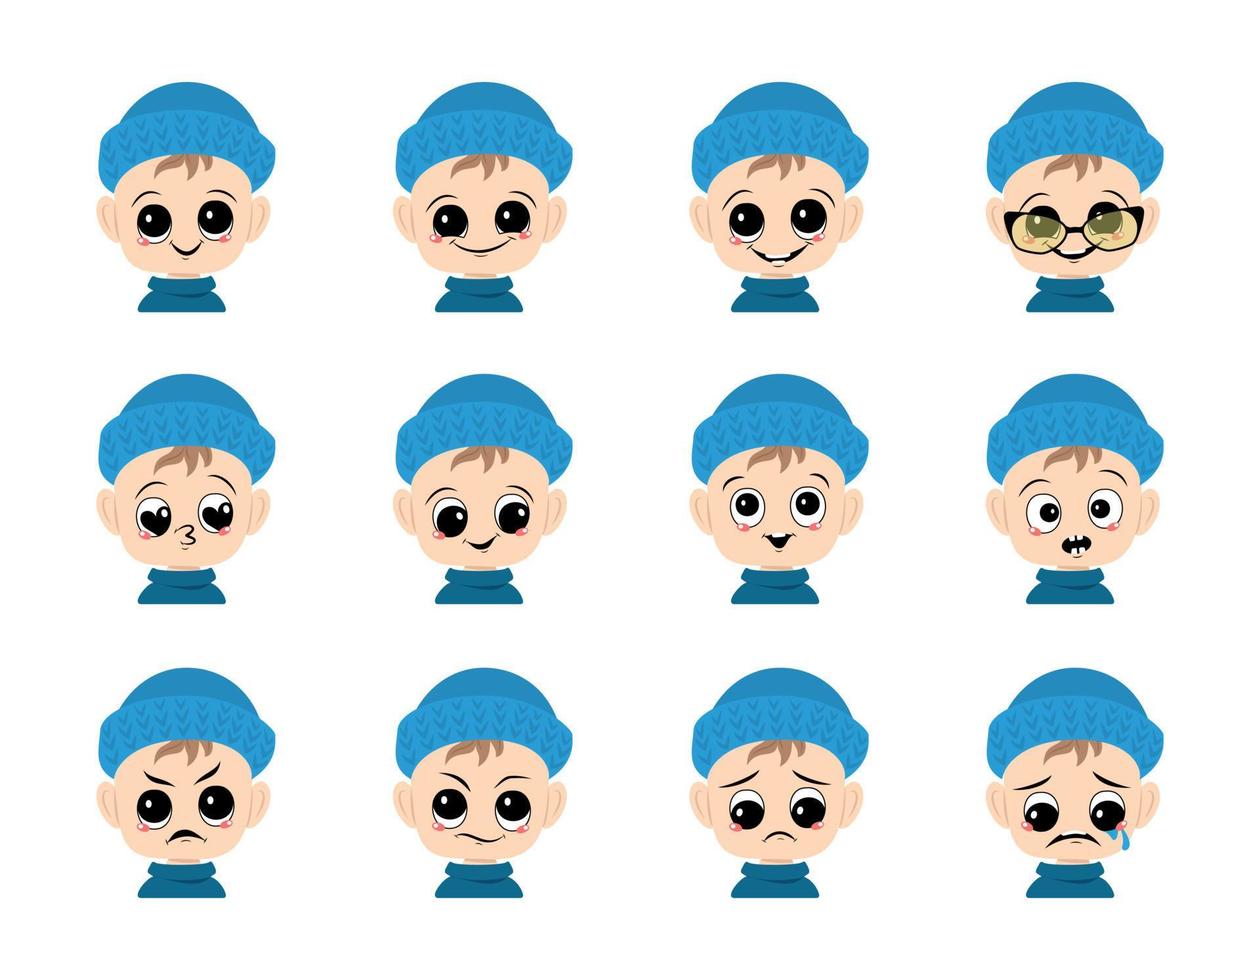 conjunto de avatar de bebê com olhos grandes e sorriso largo e emoções diferentes no chapéu de malha azul. linda criança com cara alegre, triste ou zangada no cocar de inverno vetor